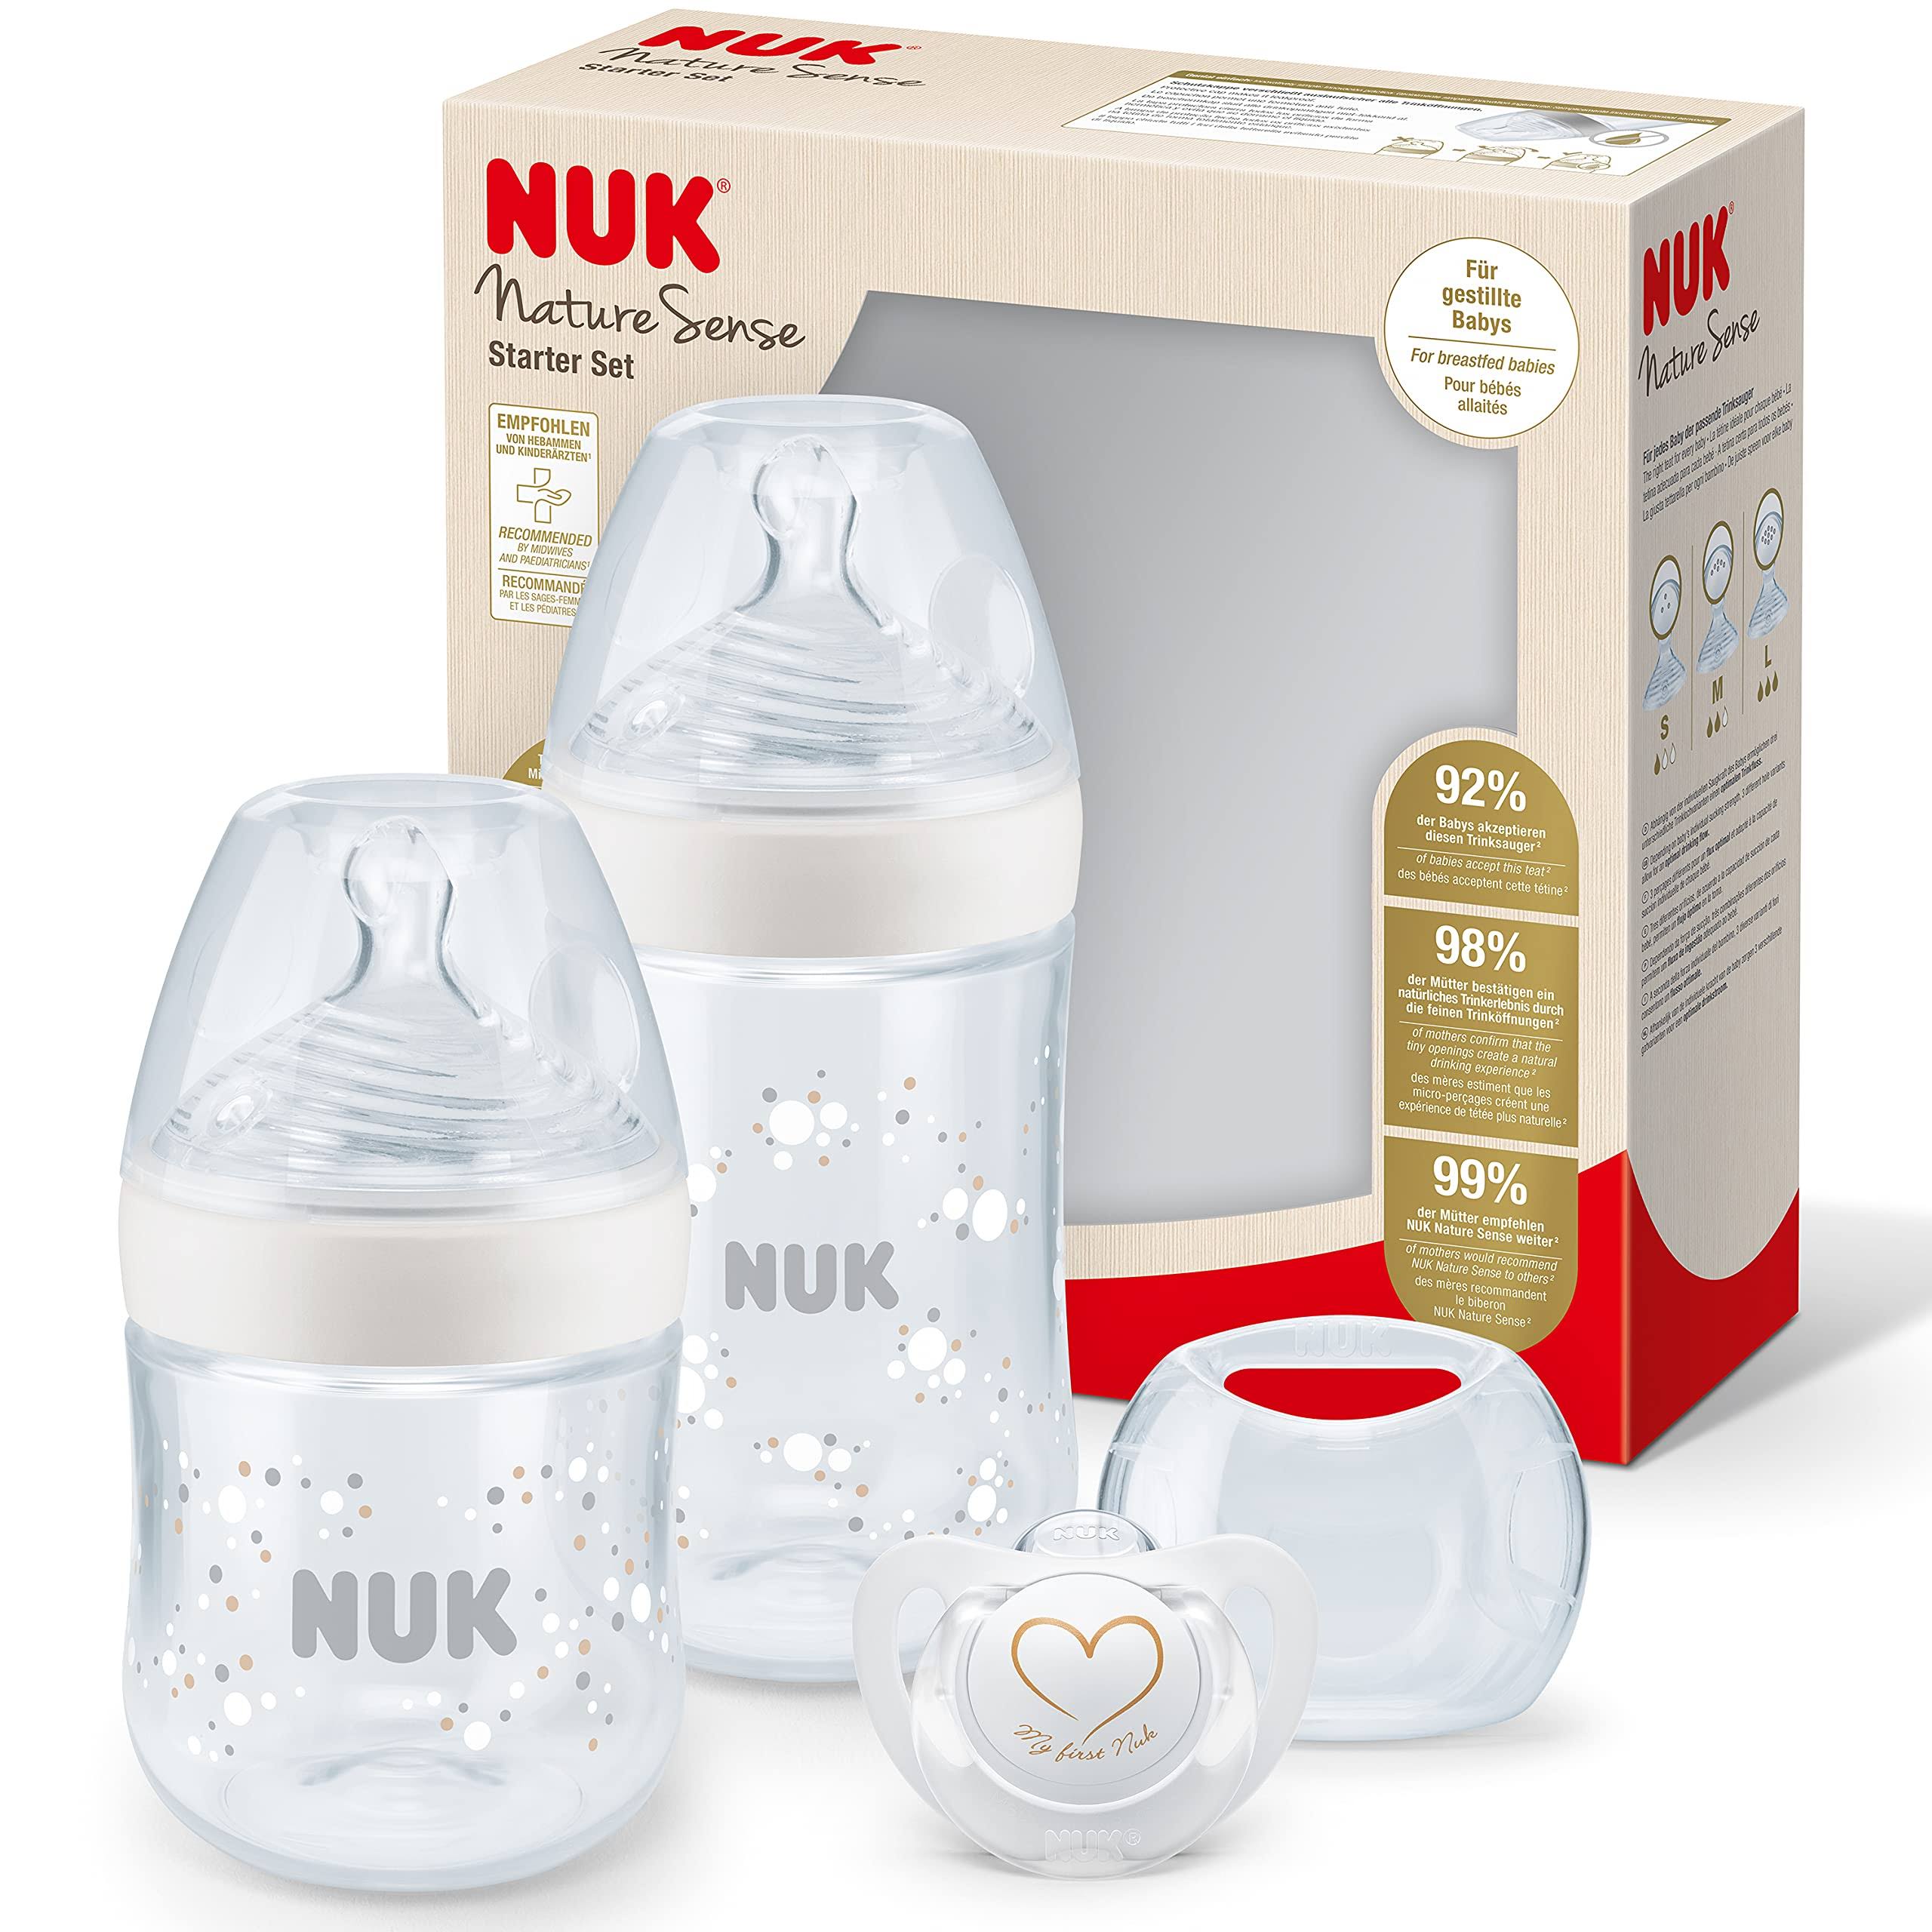 Nuk Start-Set Nature Sense 3 Pcs- Temperature Control - White, Size: Medium